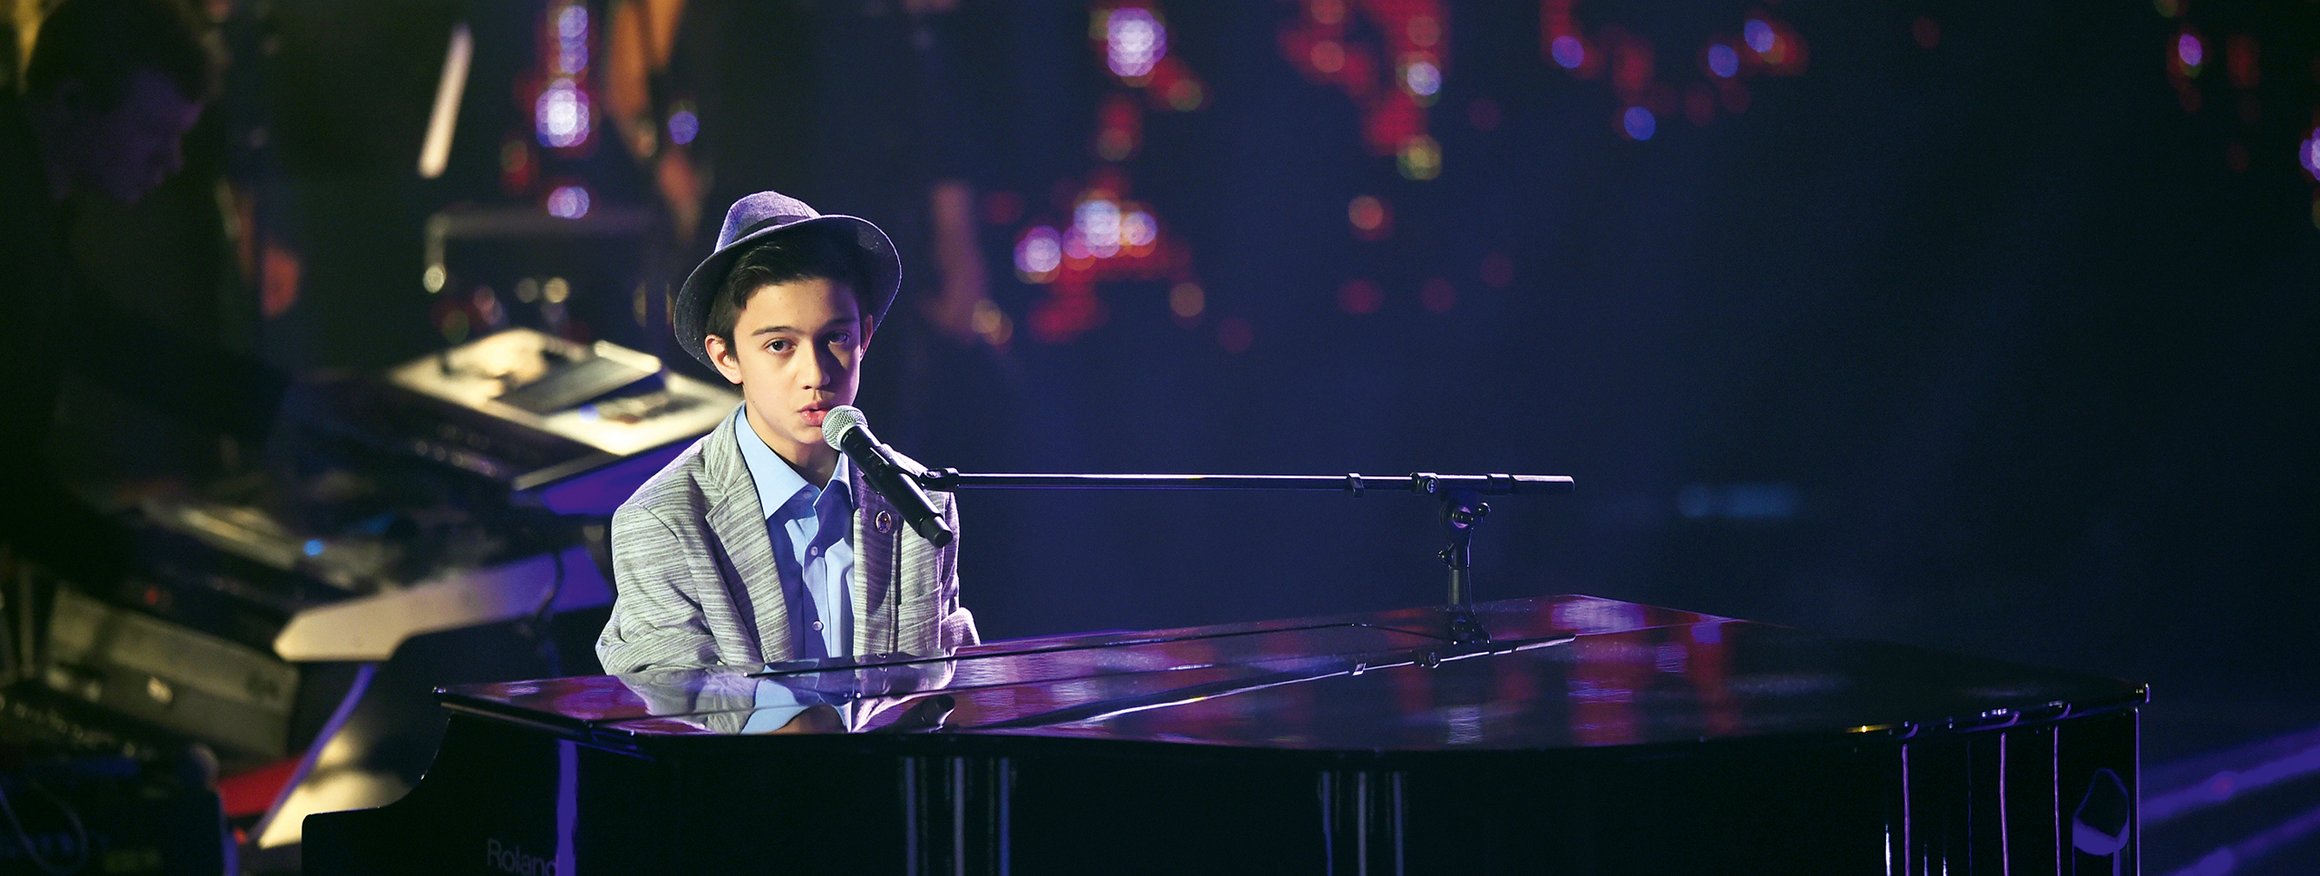 Ein Junge sitzt mit Anzug und Hut in einer Casting-Show am Klavier und singt in ein Mikro